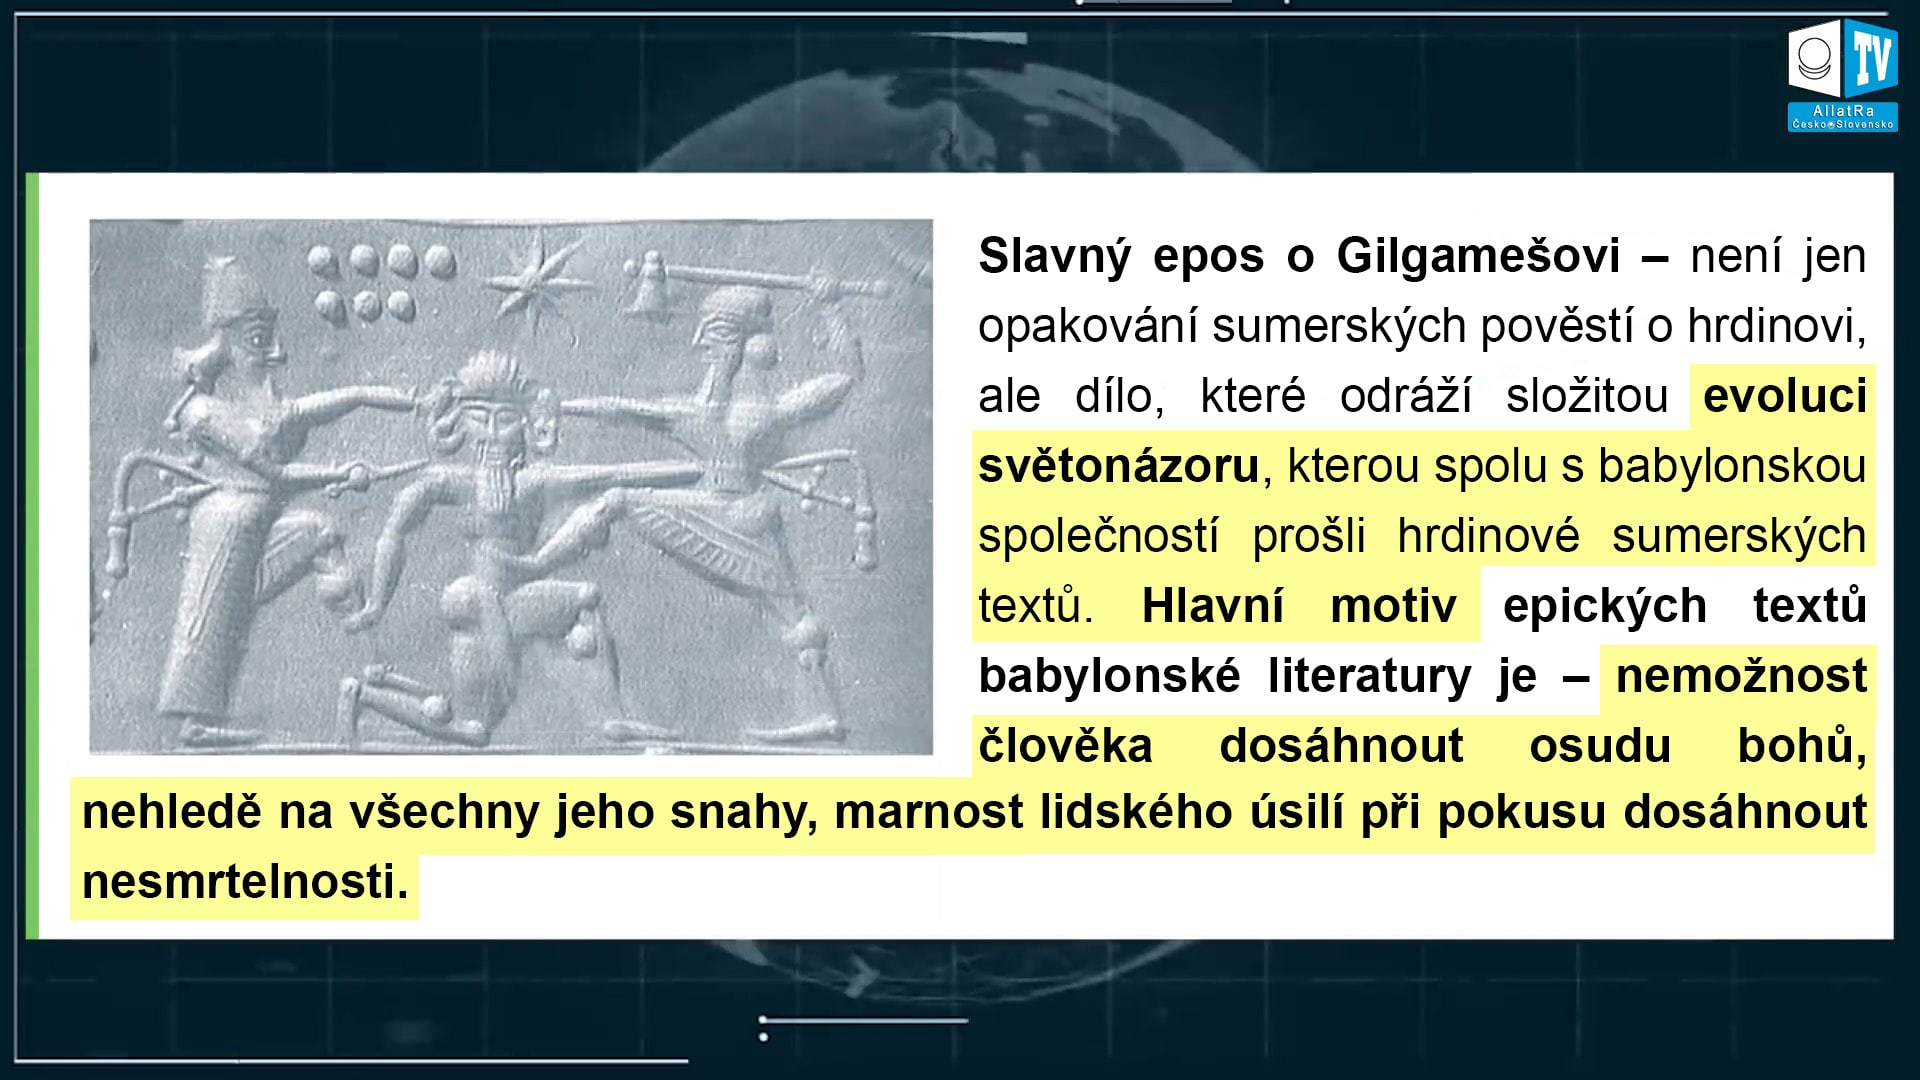 Slavný epos o Gilgamešovi.